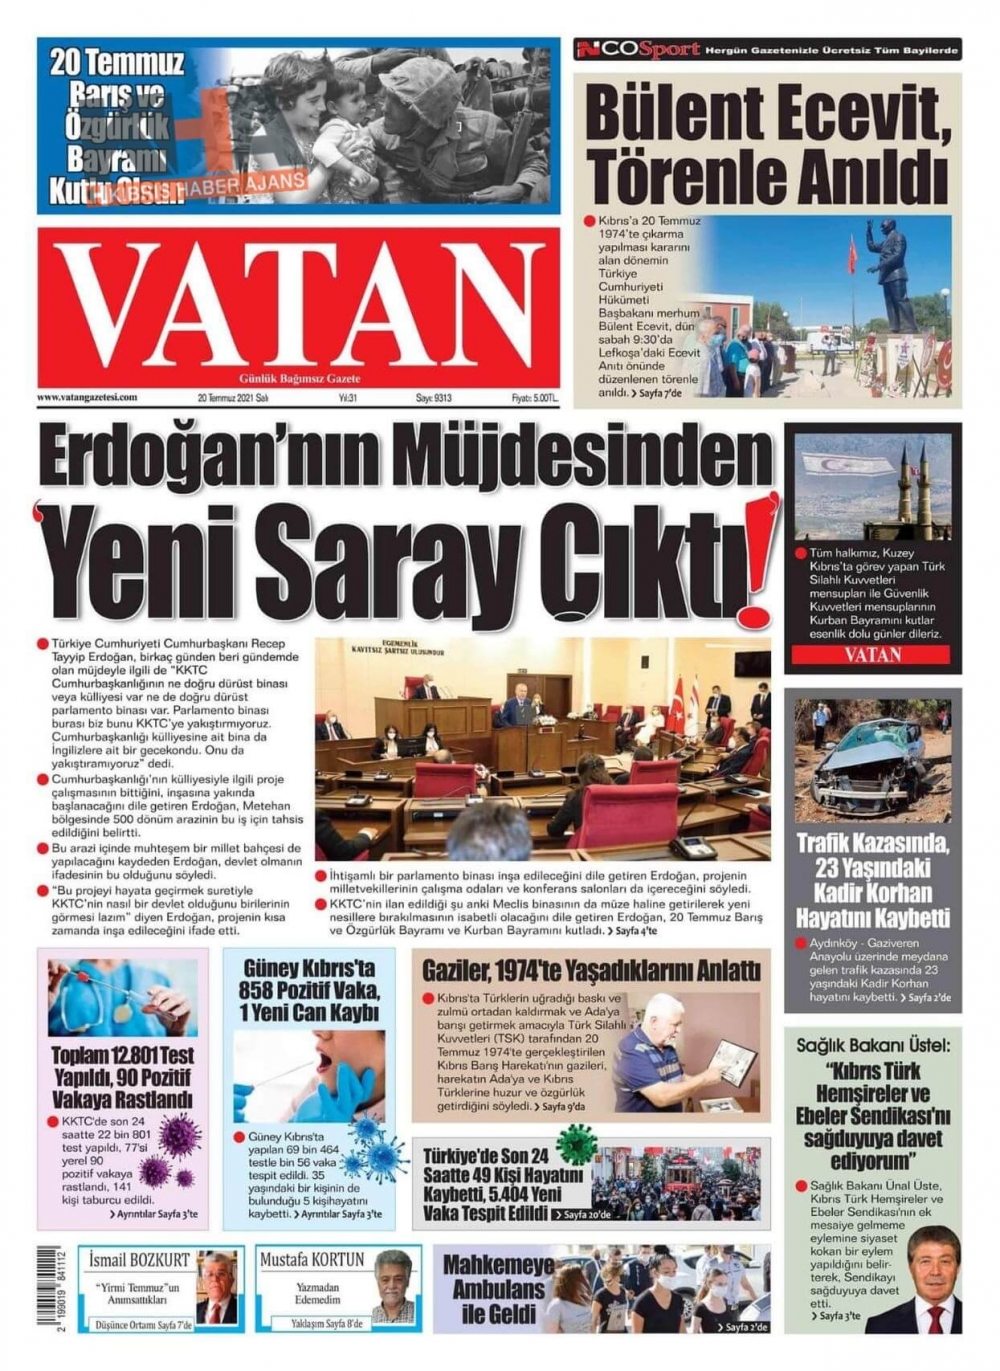 KKTC'de basılı gazeteler Erdoğan'ın Müjdesini nasıl gördü? galerisi resim 7